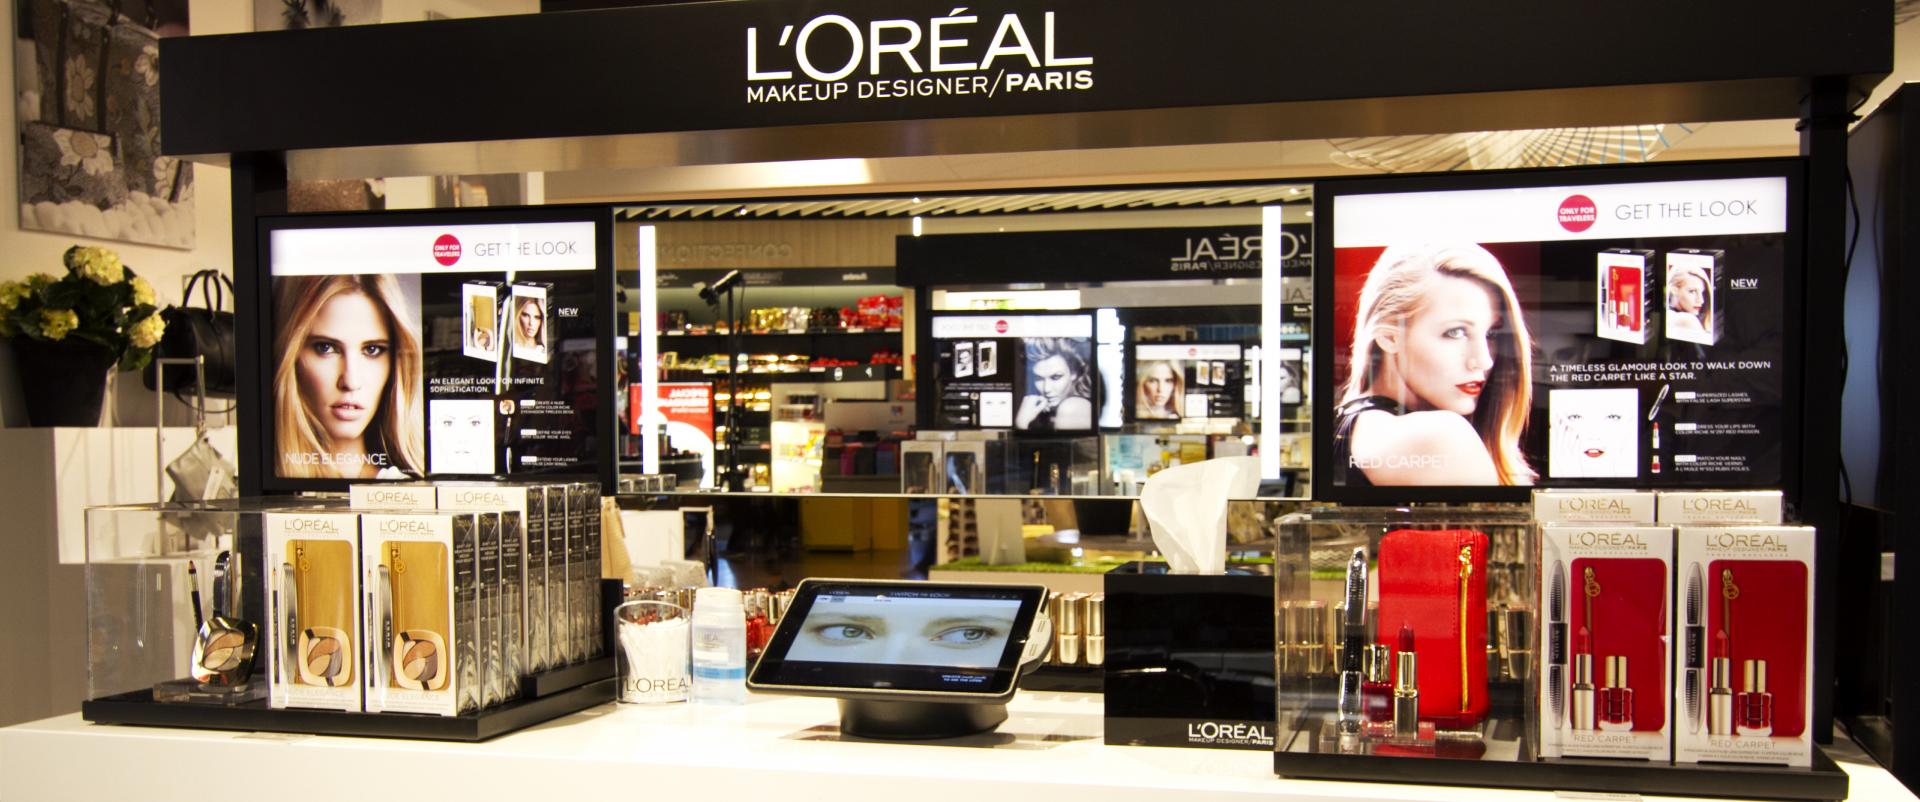 Wojny kulturowe - Arabowie wyrzucają francuskie kosmetyki z półek